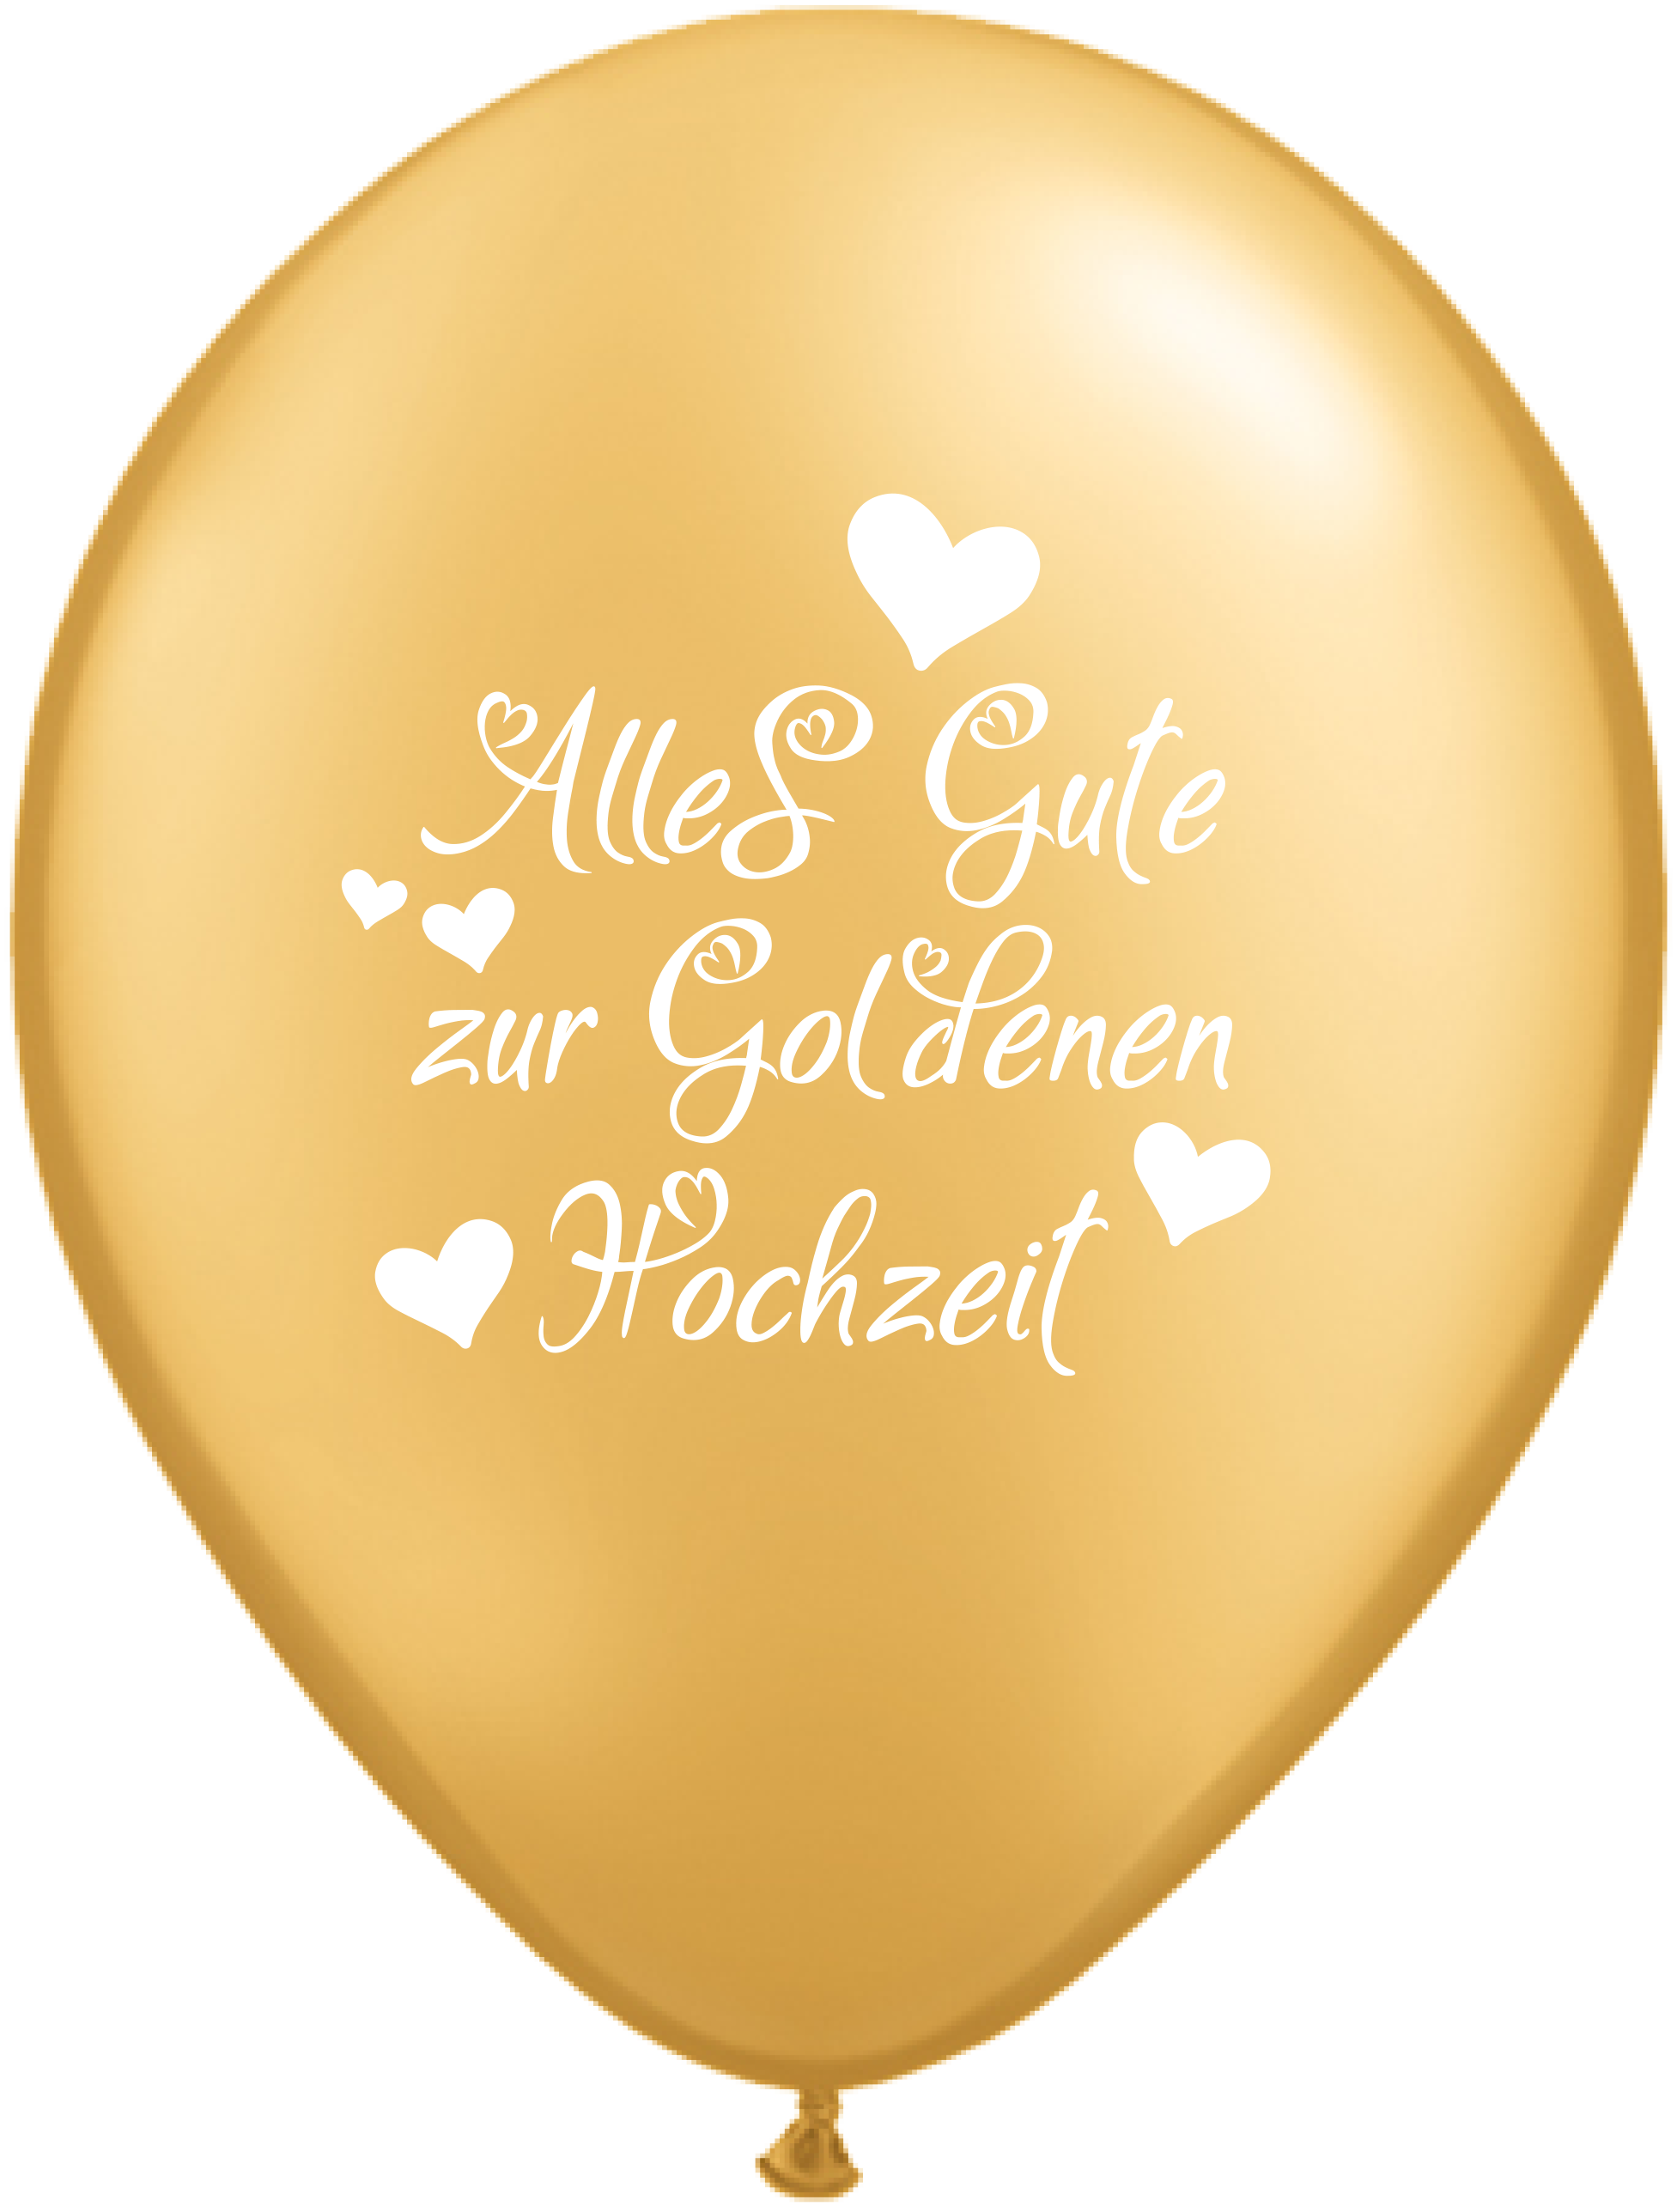 11" Alles Gute zur Gold Hochzeit Gold (Retail Pack)